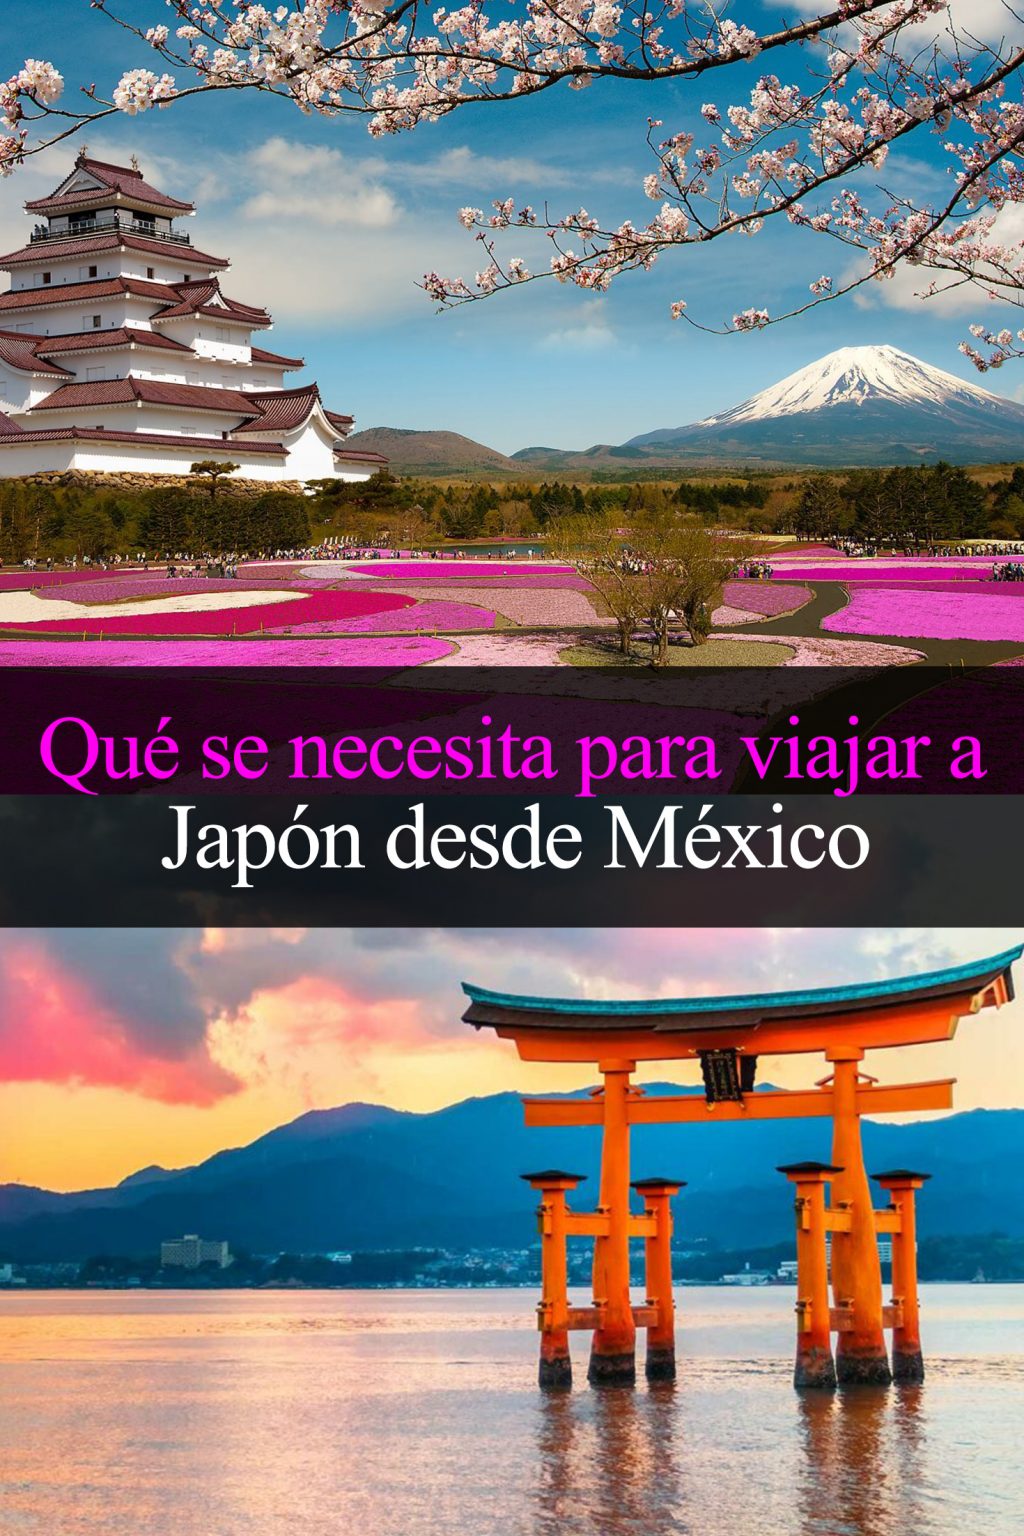 tour japon desde mexico